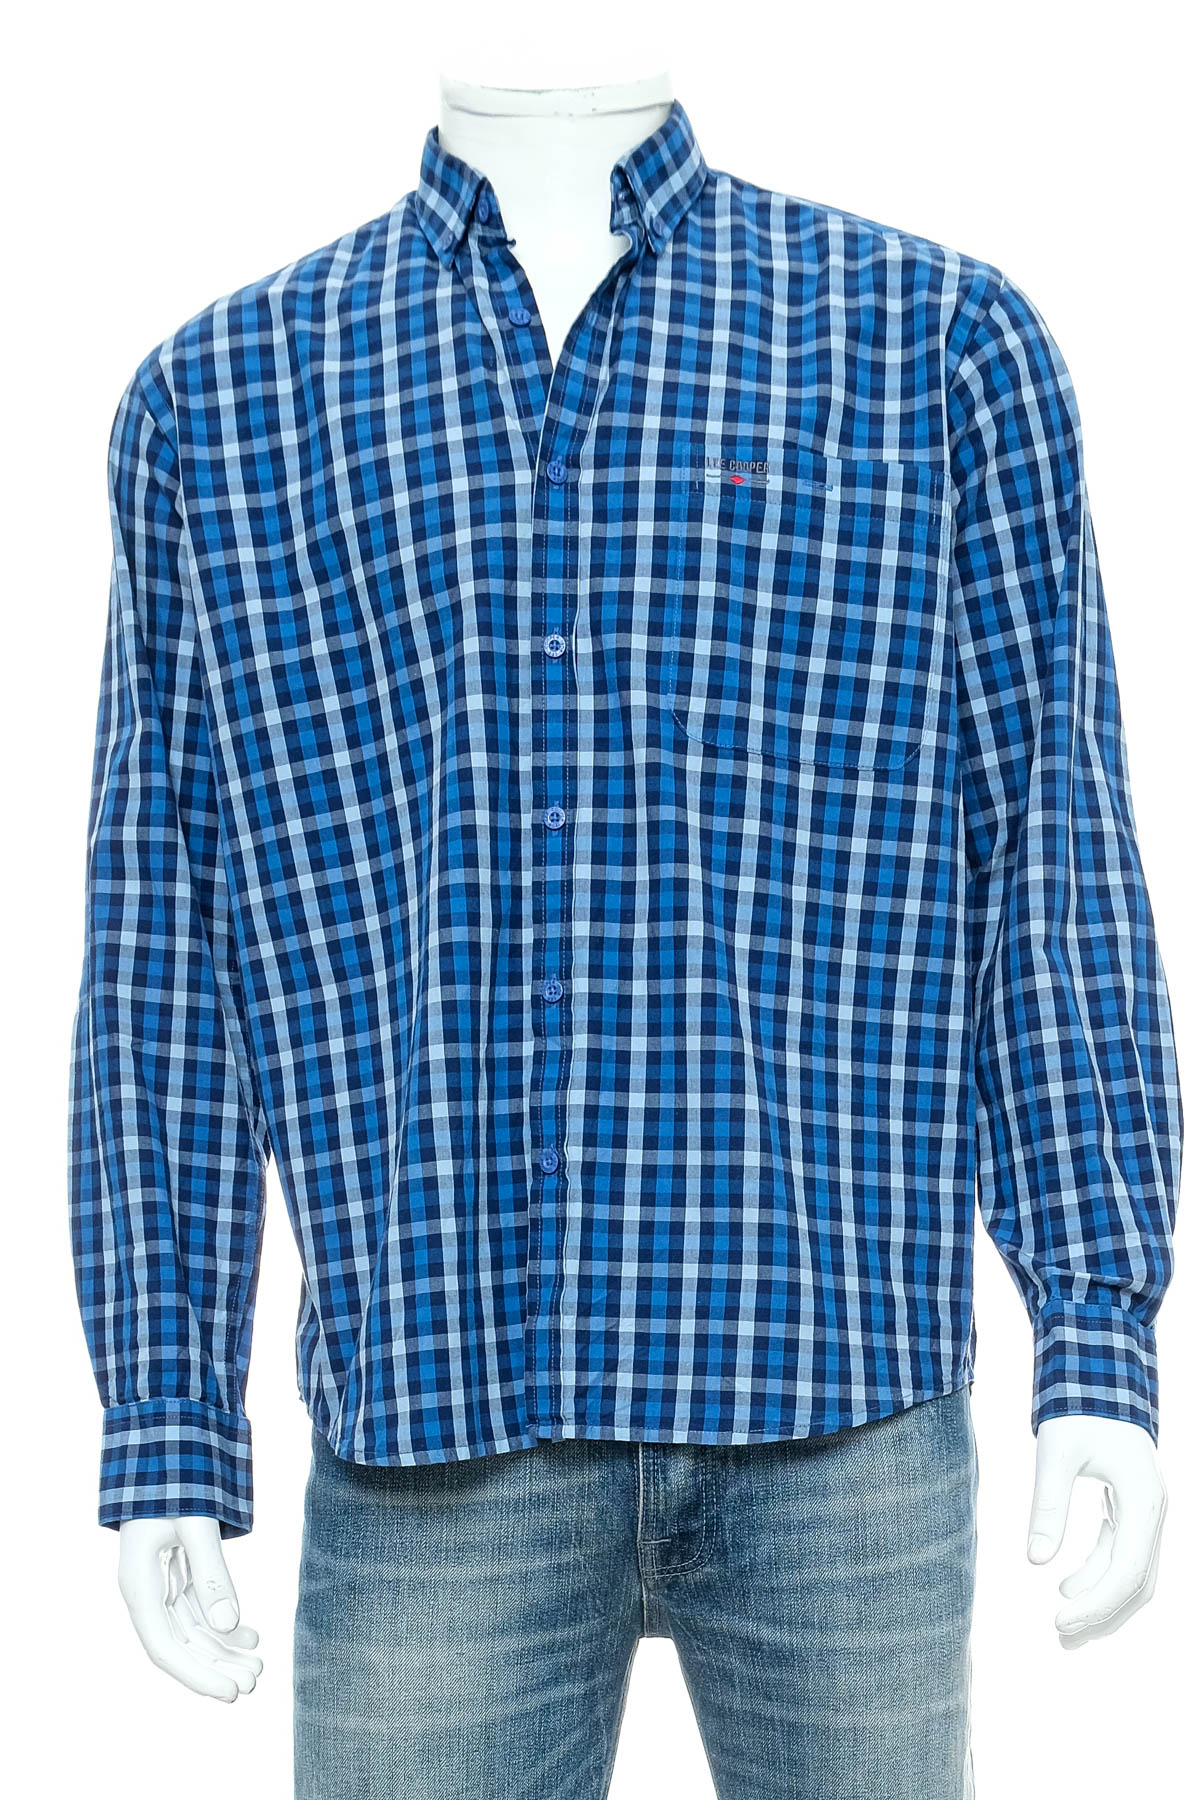 Ανδρικό πουκάμισο - Lee Cooper - 0